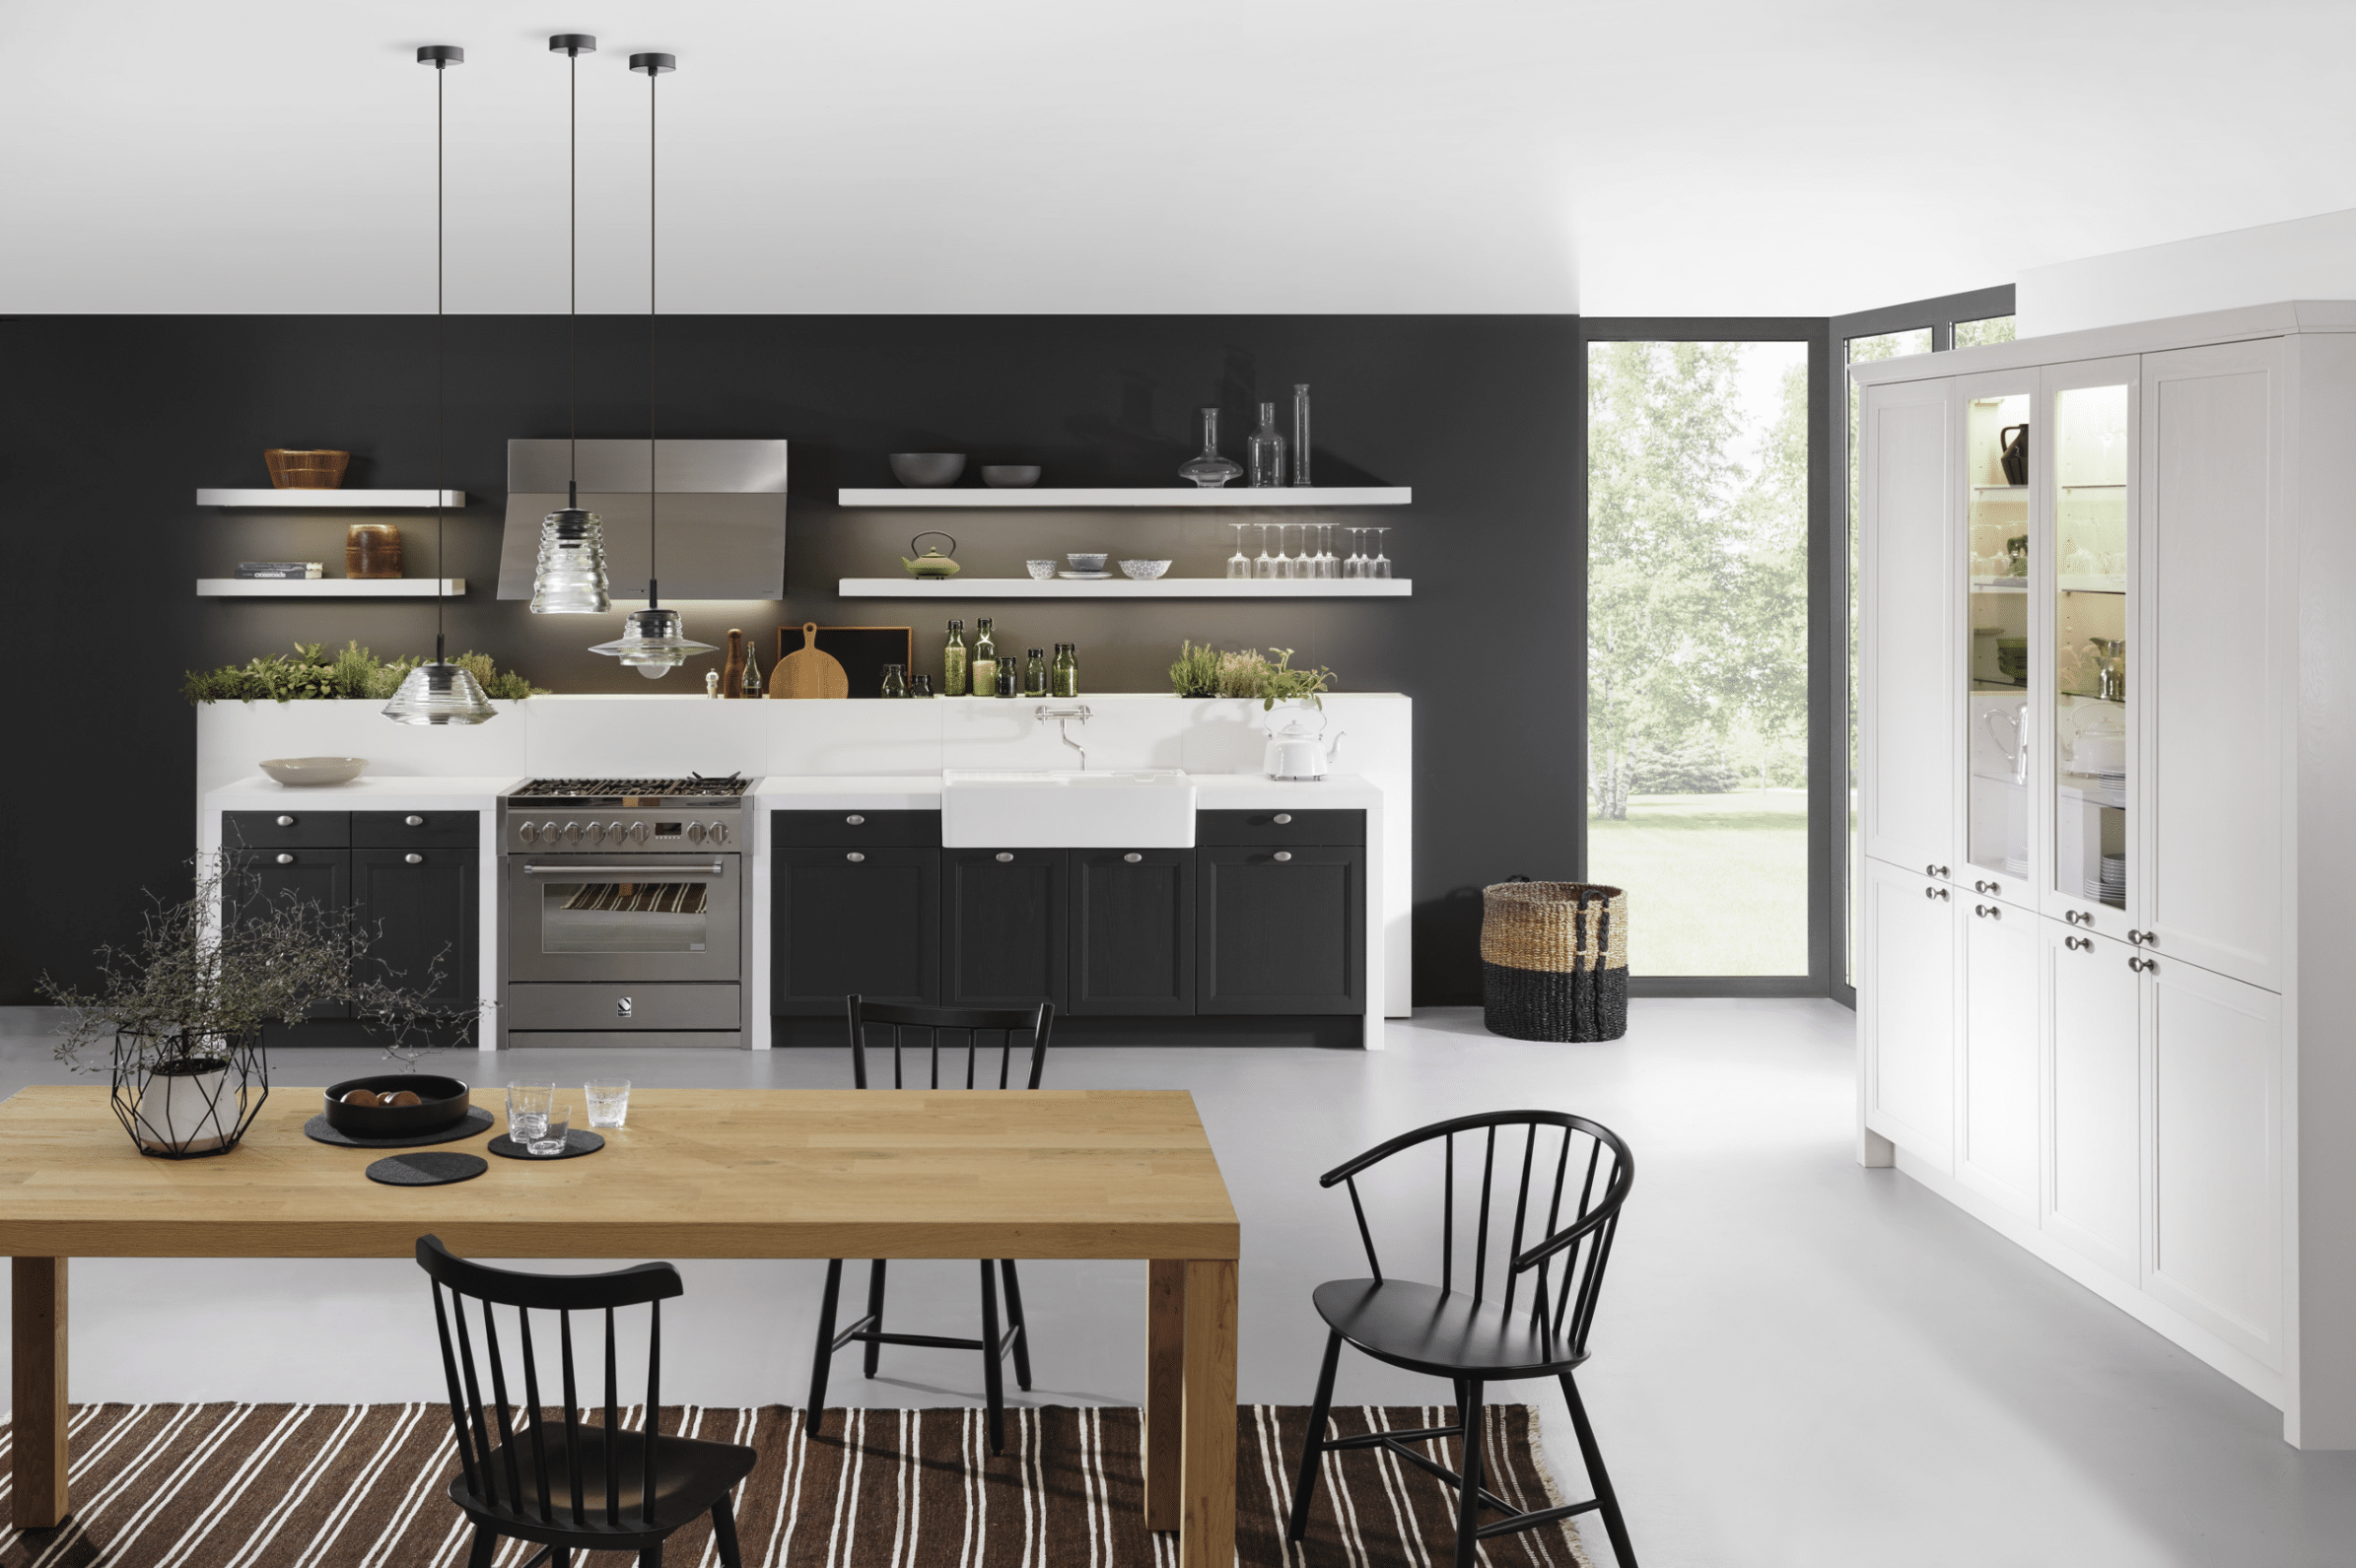 WOHNHAUS Grill & Ronacher zeigt eine moderne Landhausküche von LEICHT Küchen mit Wandzeile und schönem Essbereich im Vordergrund.